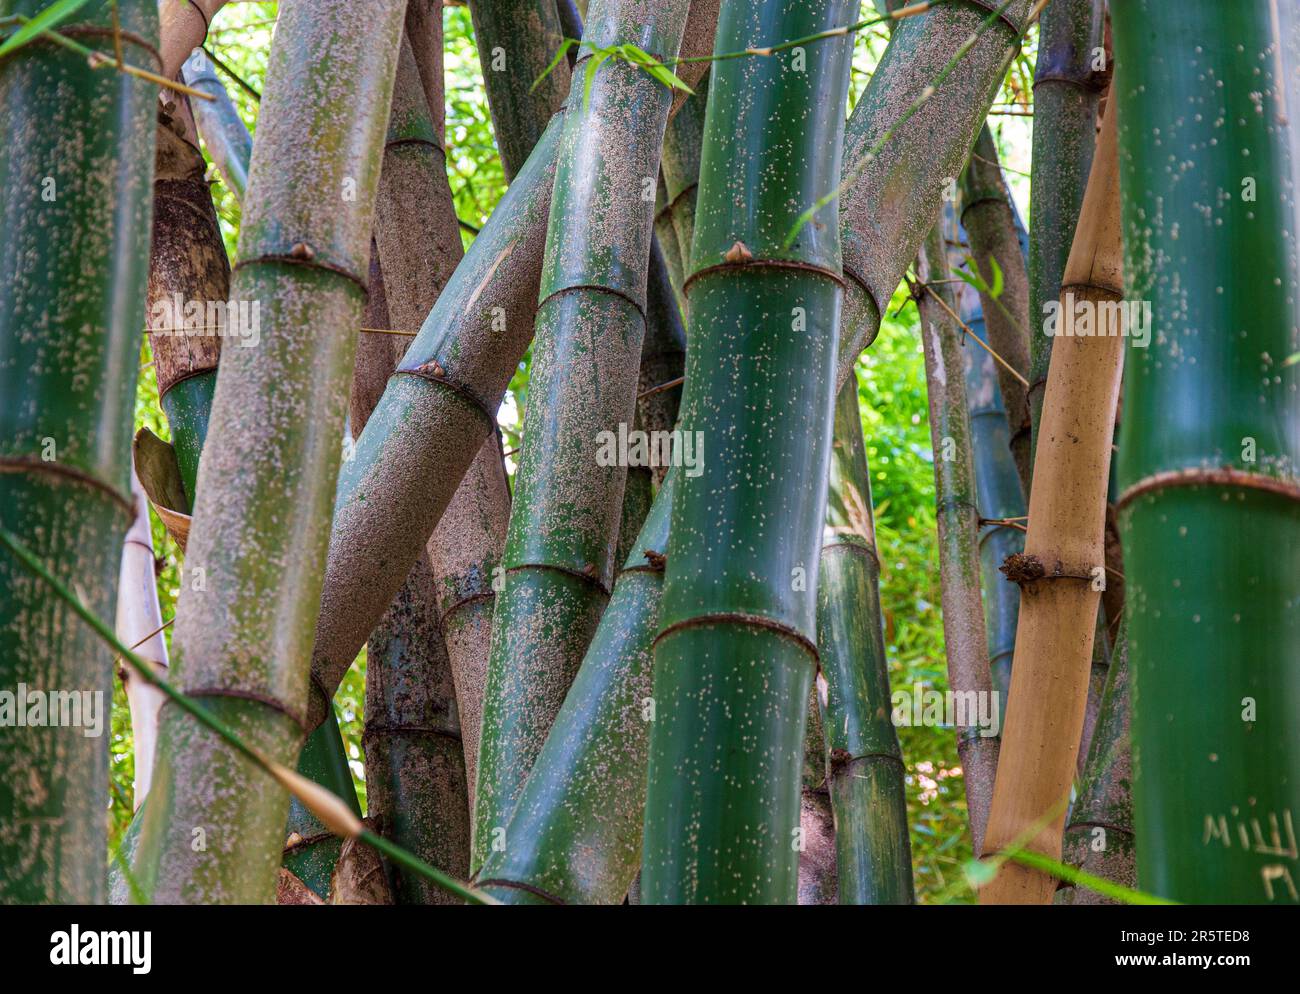 bamboo Jardin Botanico Valencia, Spain Stock Photo